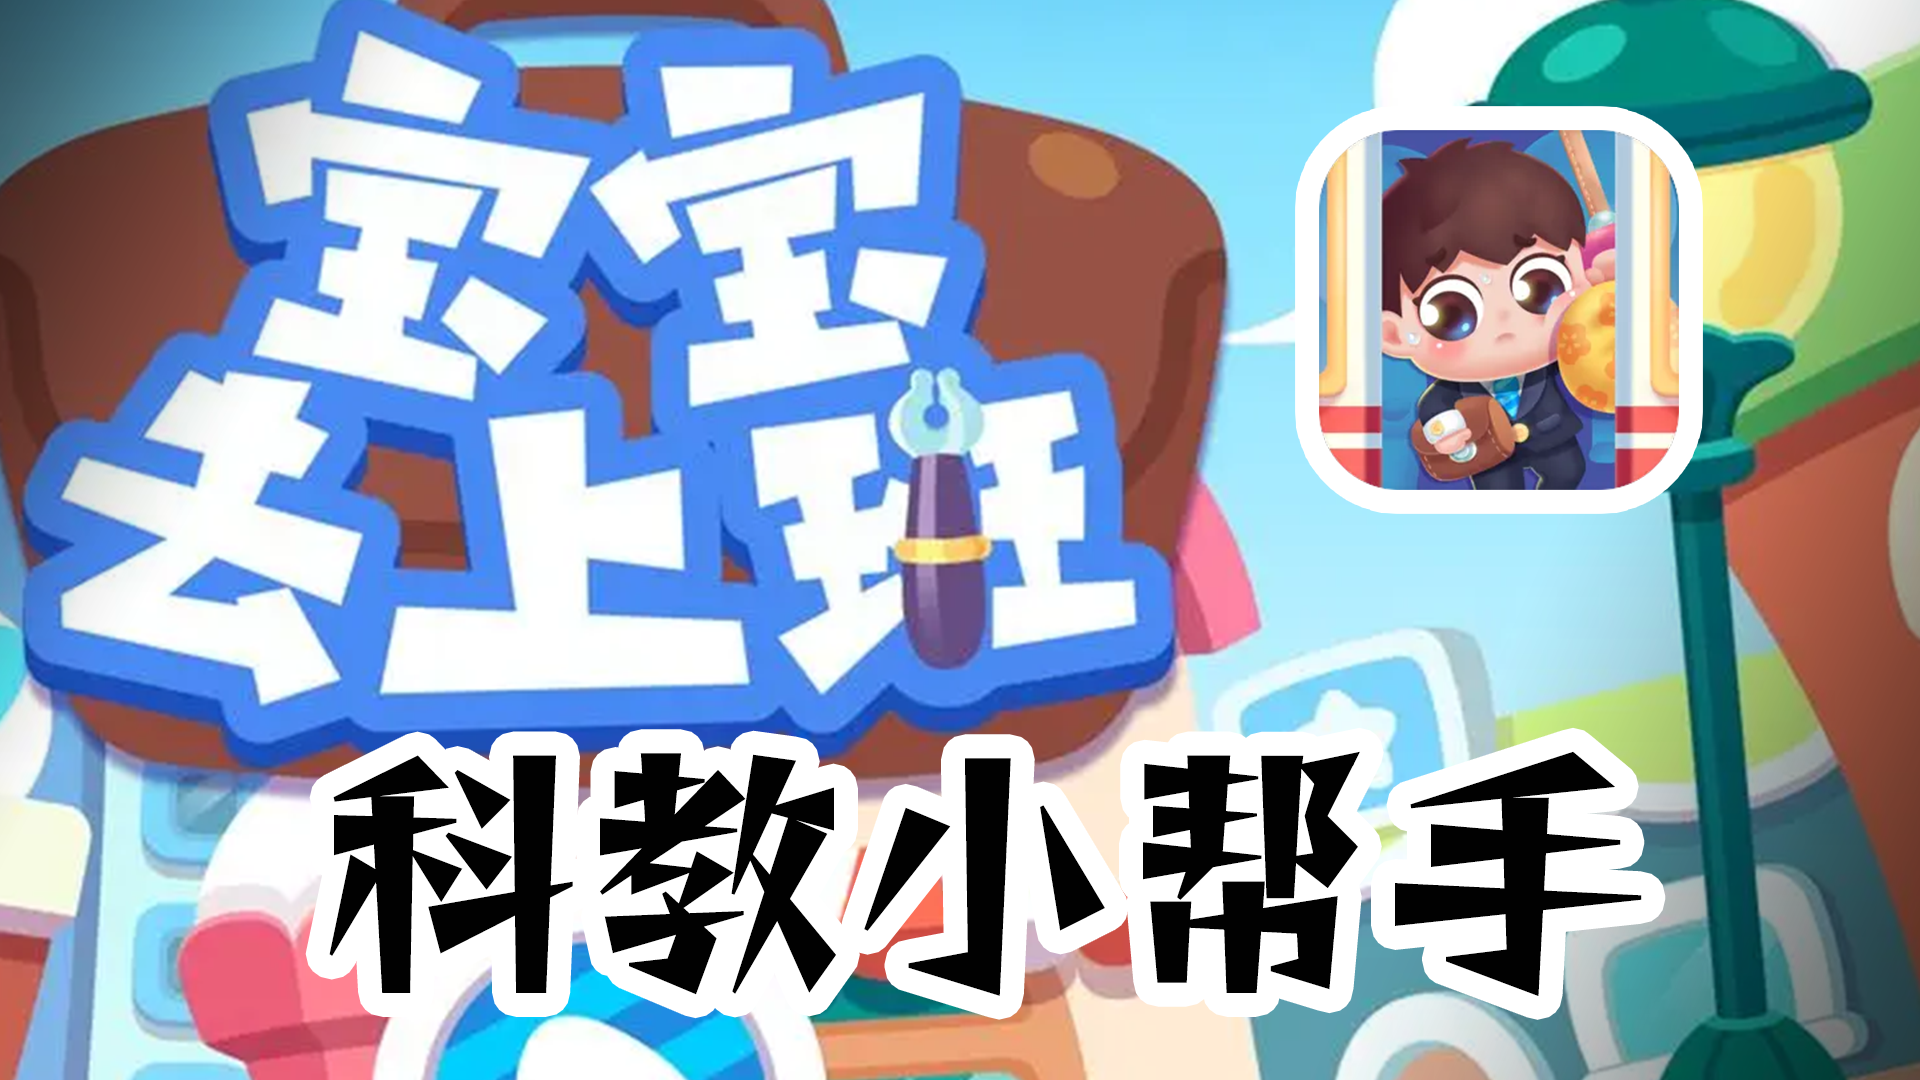 幼儿科教小游戏 最合适中国宝宝的一集